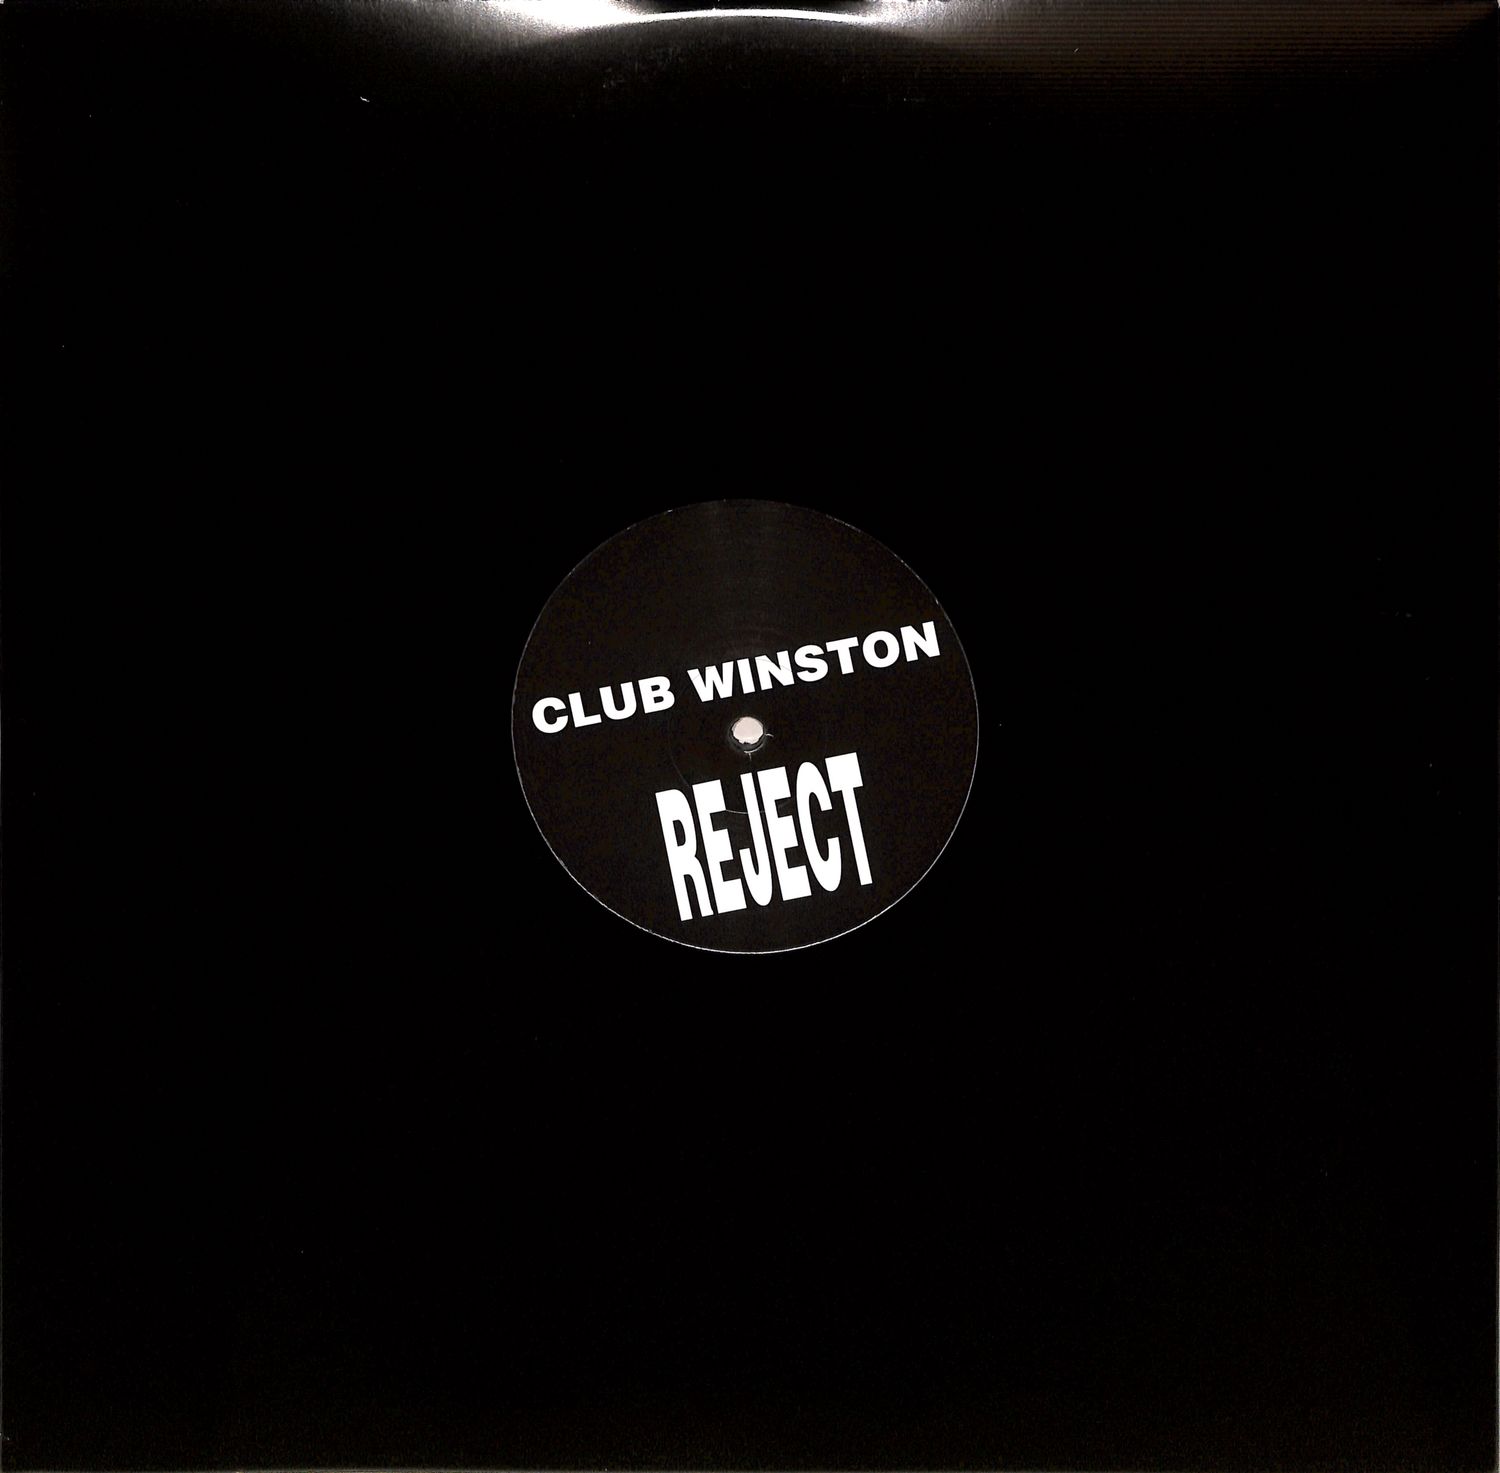 Club Winston - BLURT REJECT